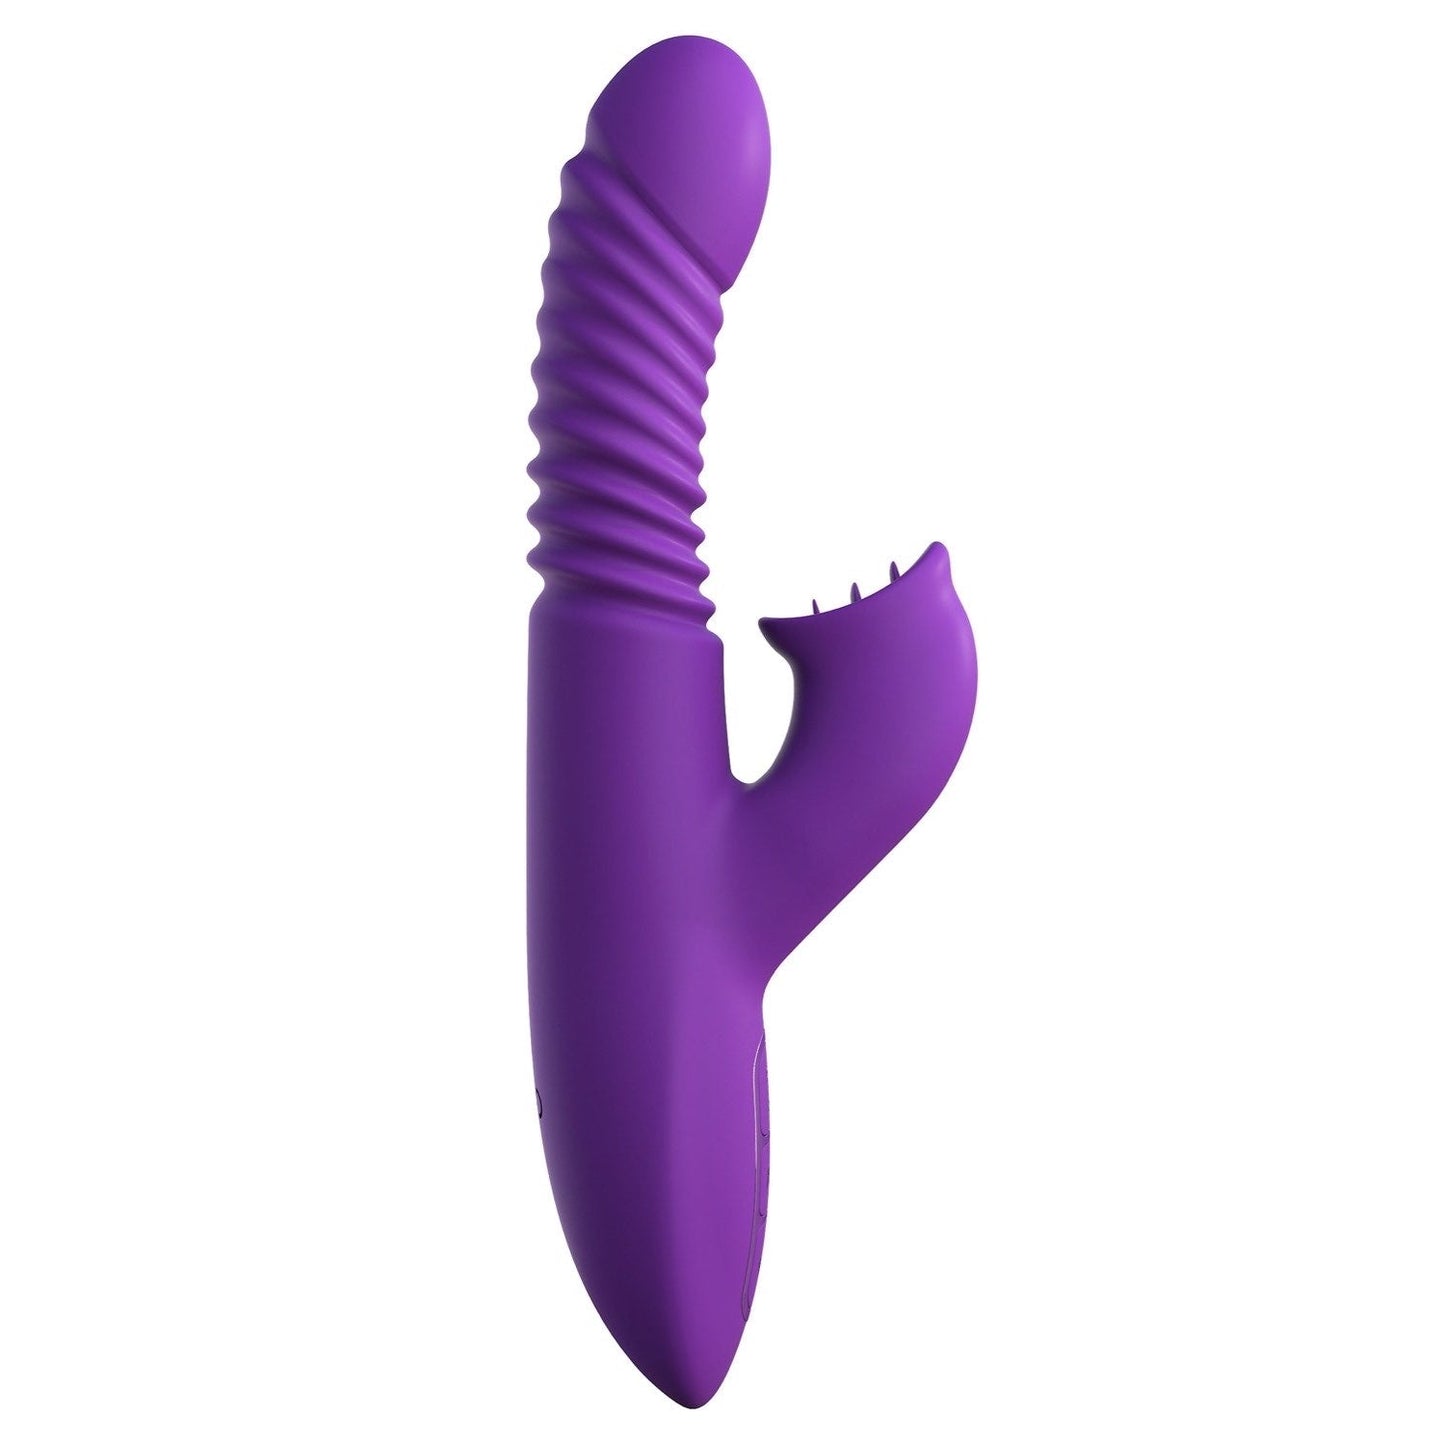 终极推力阴蒂刺激 - 紫色 USB 可充电推力兔子振动器